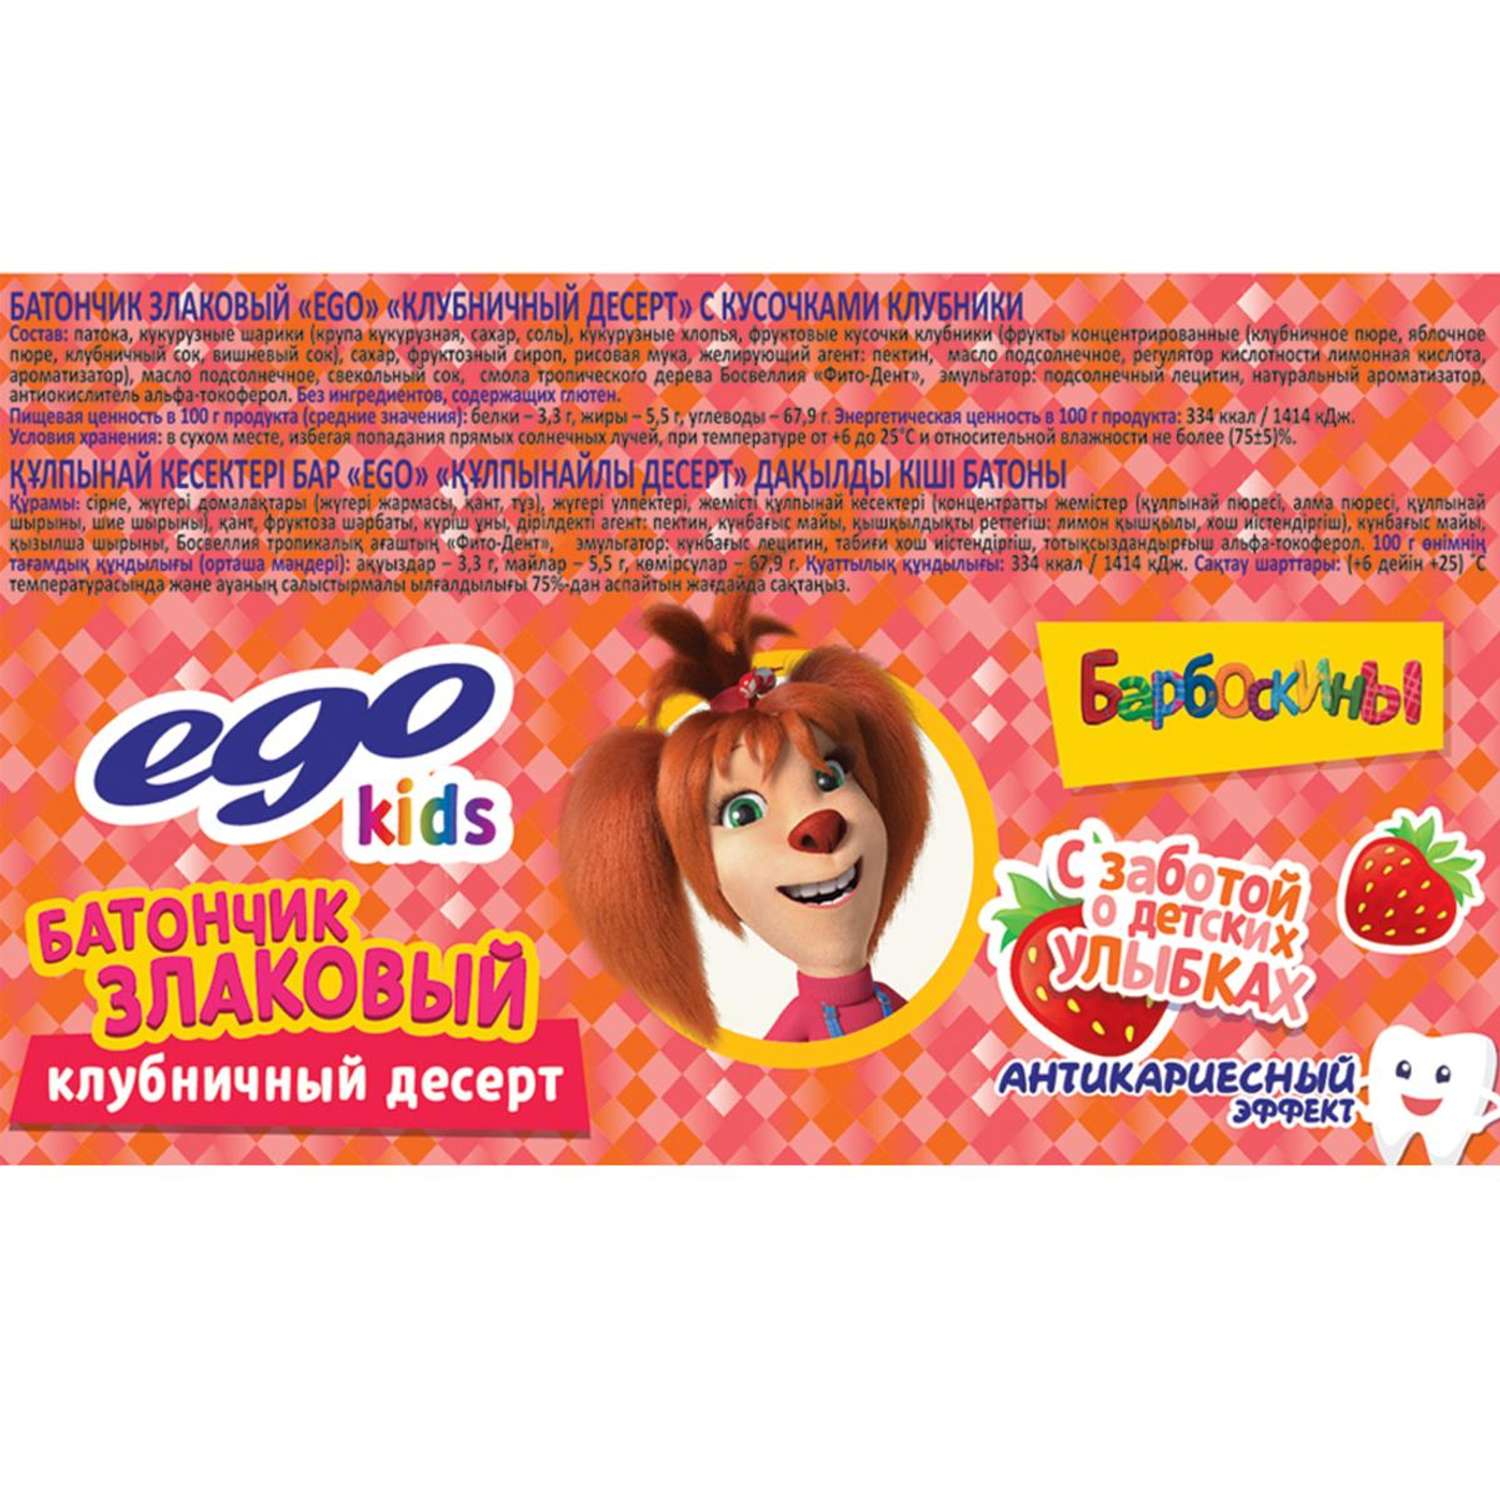 Батончик злаковый Ego kids клубничный десерт 25г - фото 2